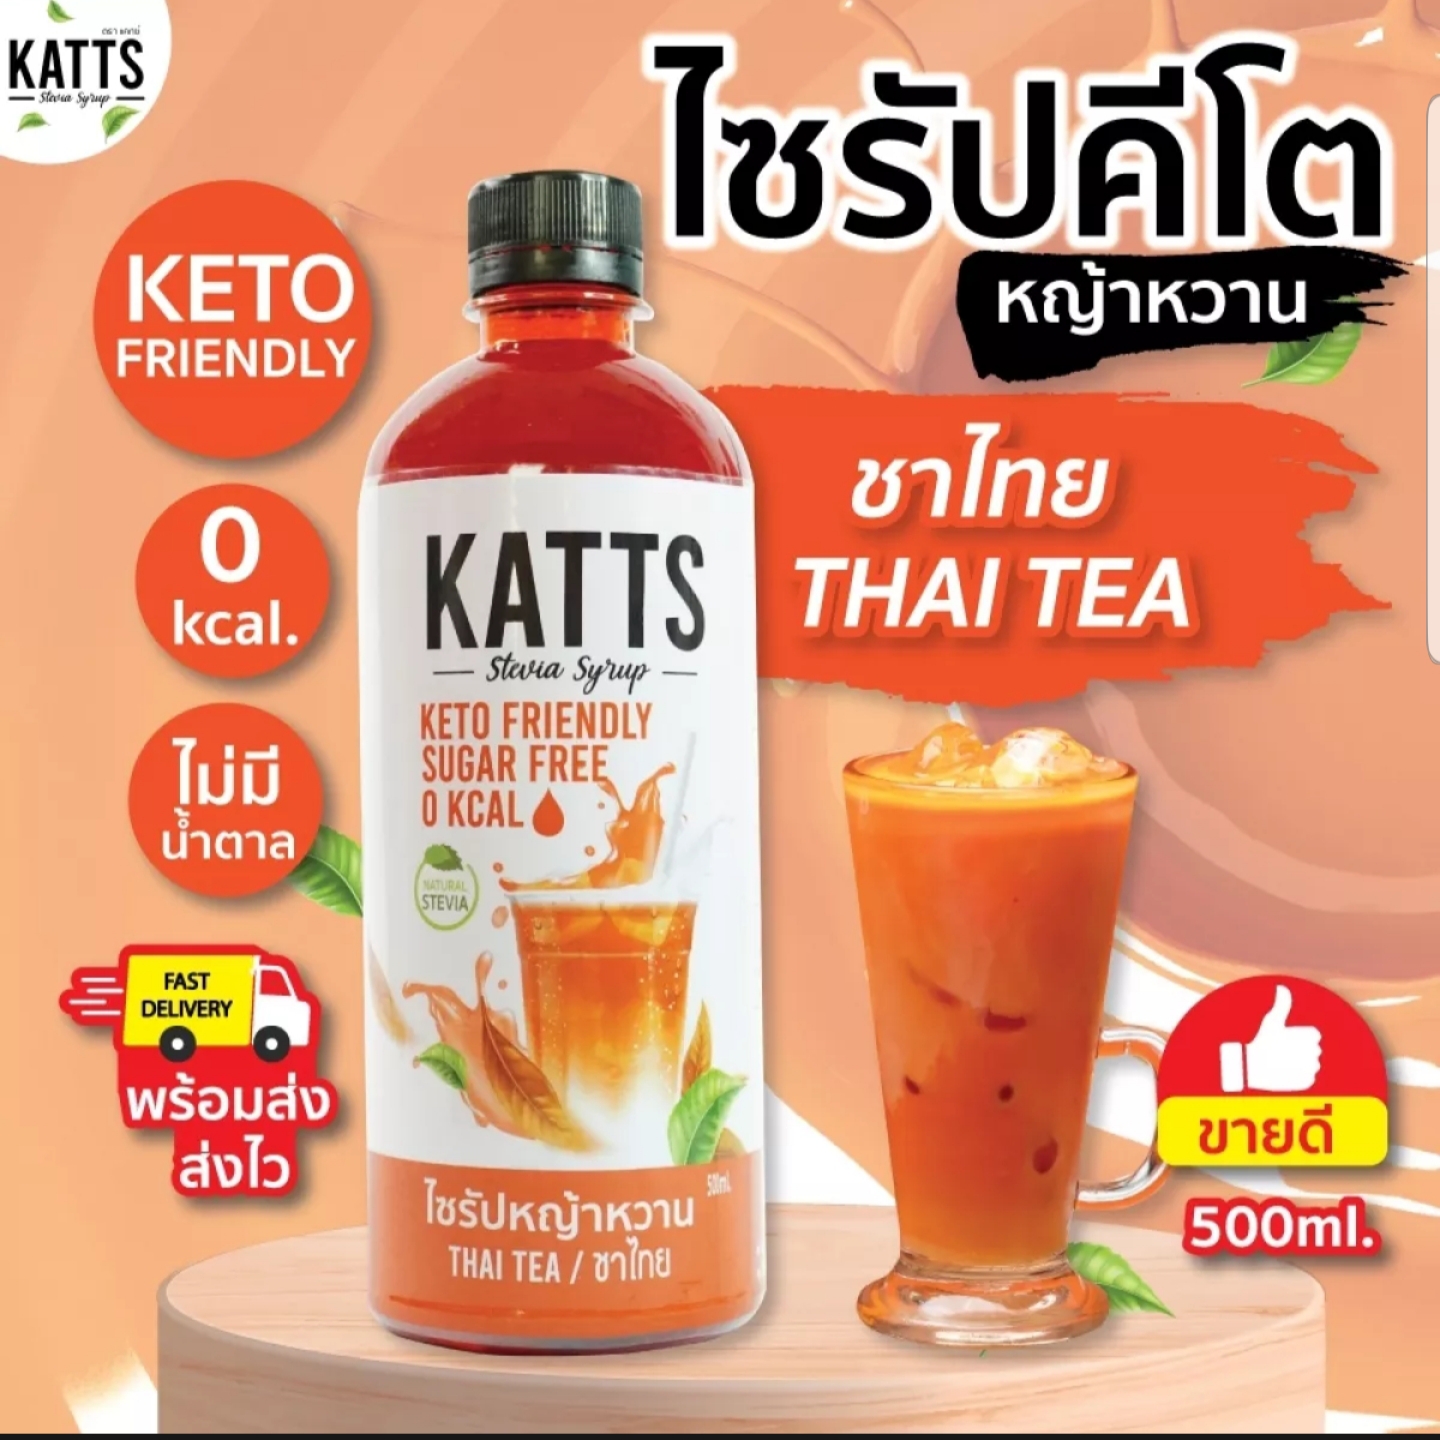 KATTS (โฉมใหม่) ไซรัปคีโต ไซรัปหญ้าหวาน รสชาไทย ขนาด 500ML